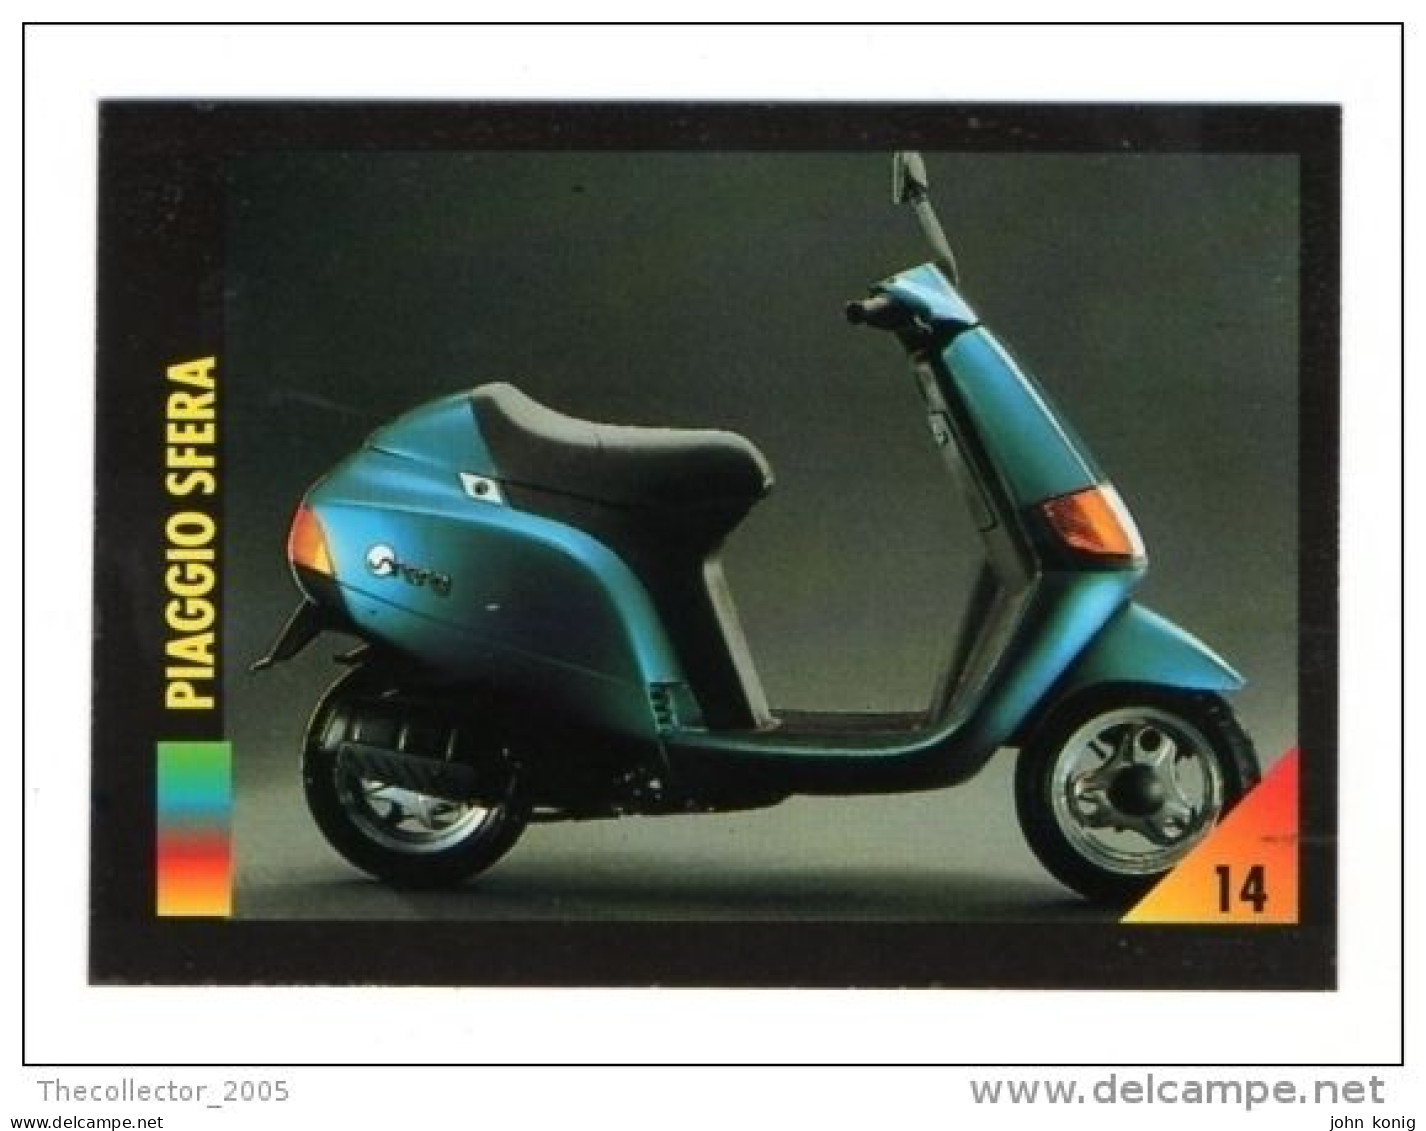 FIGURINA TRADING CARDS - LA MIA MOTO - MY MOTORBIKE - MASTERS EDIZIONI (1993) - PIAGGIO SFERA - Auto & Verkehr